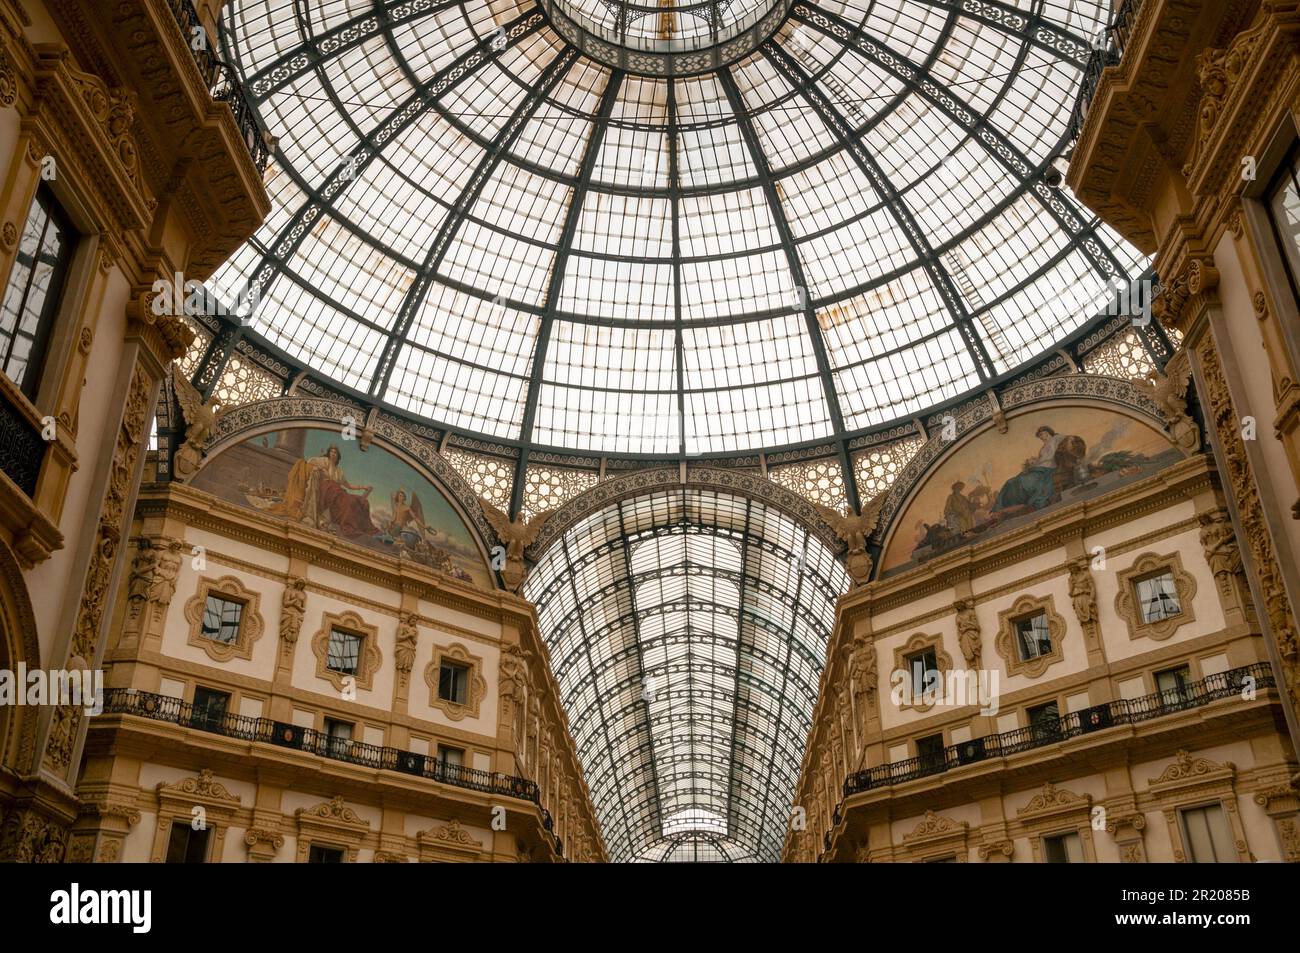 Eisen- und Glasdecke, Kuppel und Mosaiken, die Asien und Europa repräsentieren, in der Galleria Vittorio Emanuele II in Mailand, Italien. Stockfoto